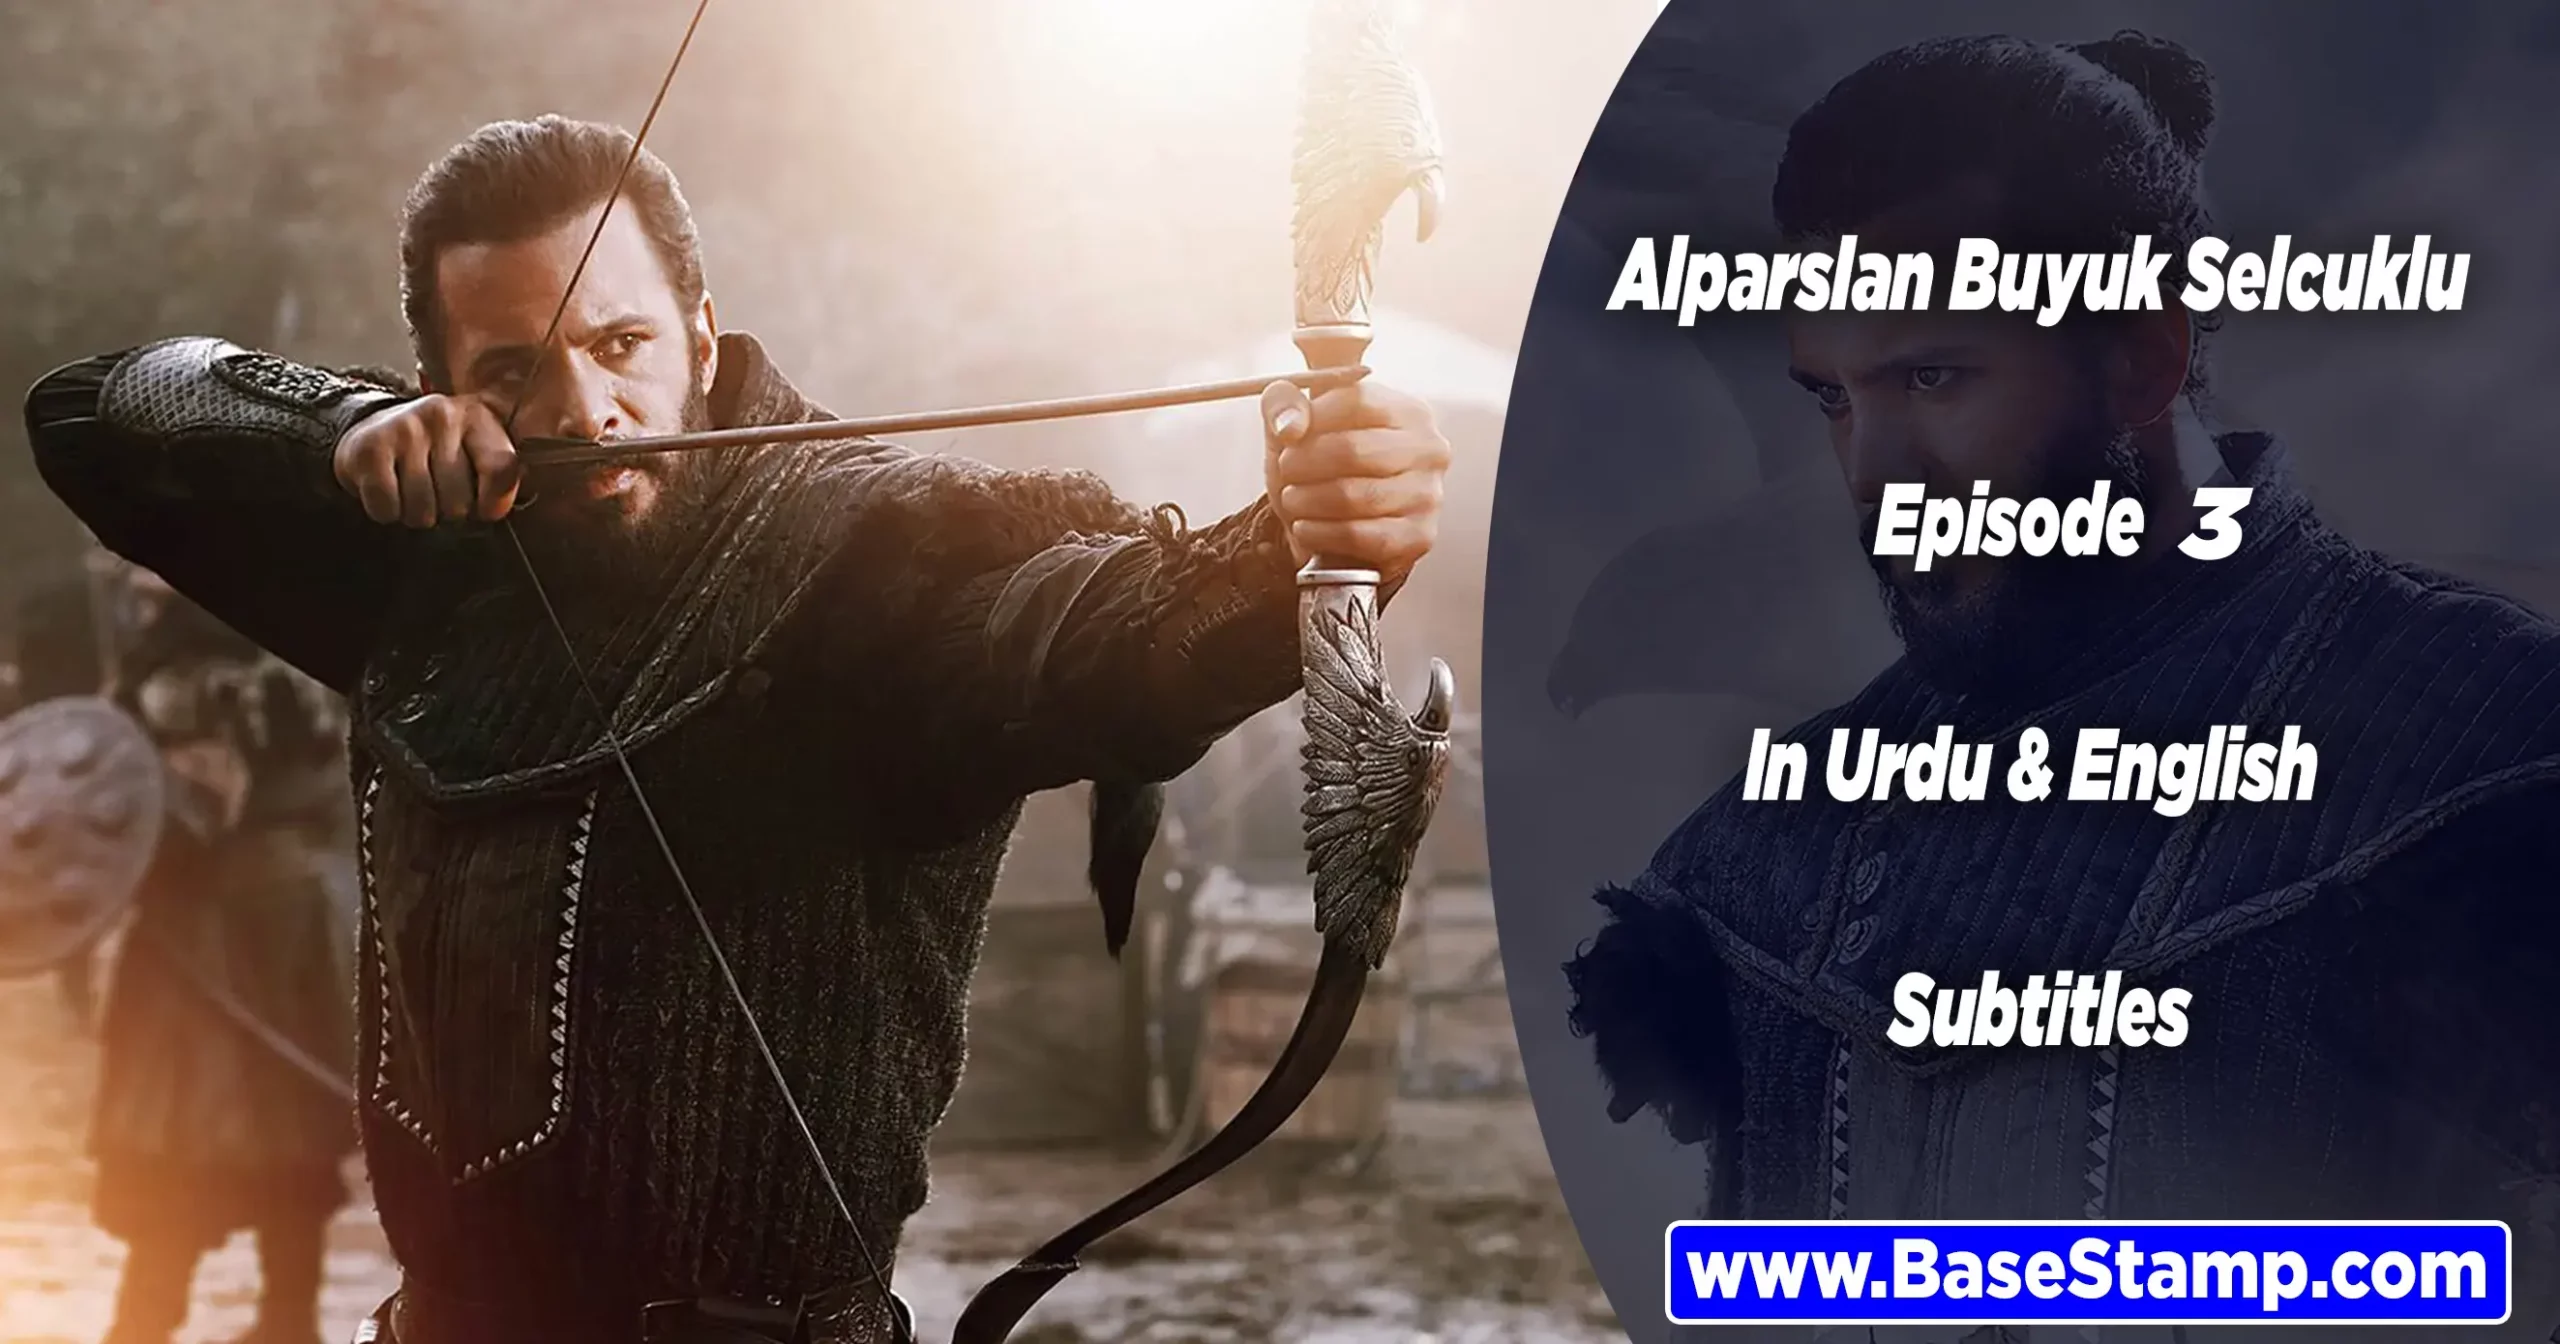 Alparslan Buyuk Selcuklu Episode 3 In Urdu & English Subtitles